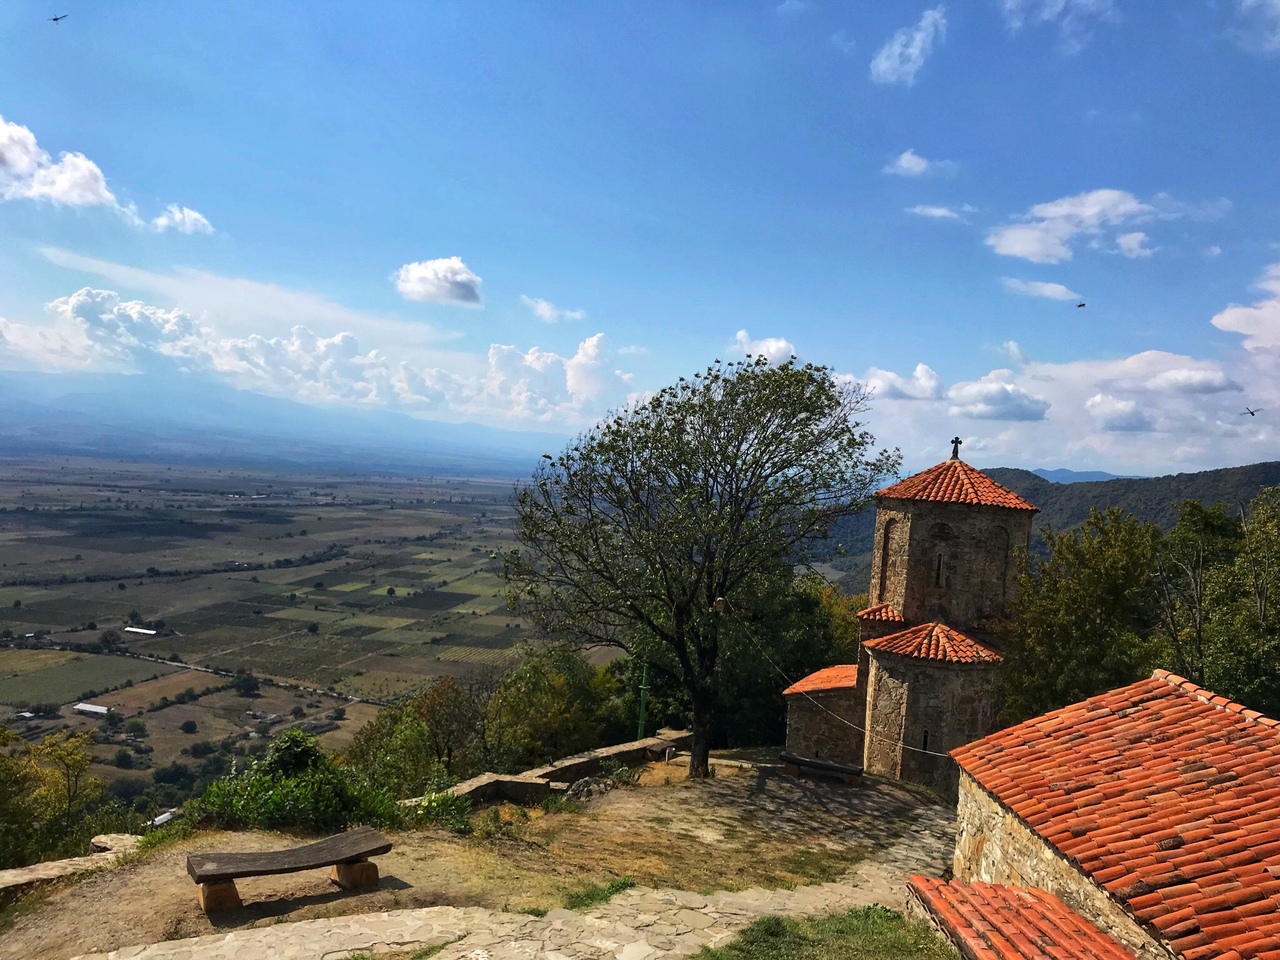 dostoprimechatelnosti gruzii nekresi